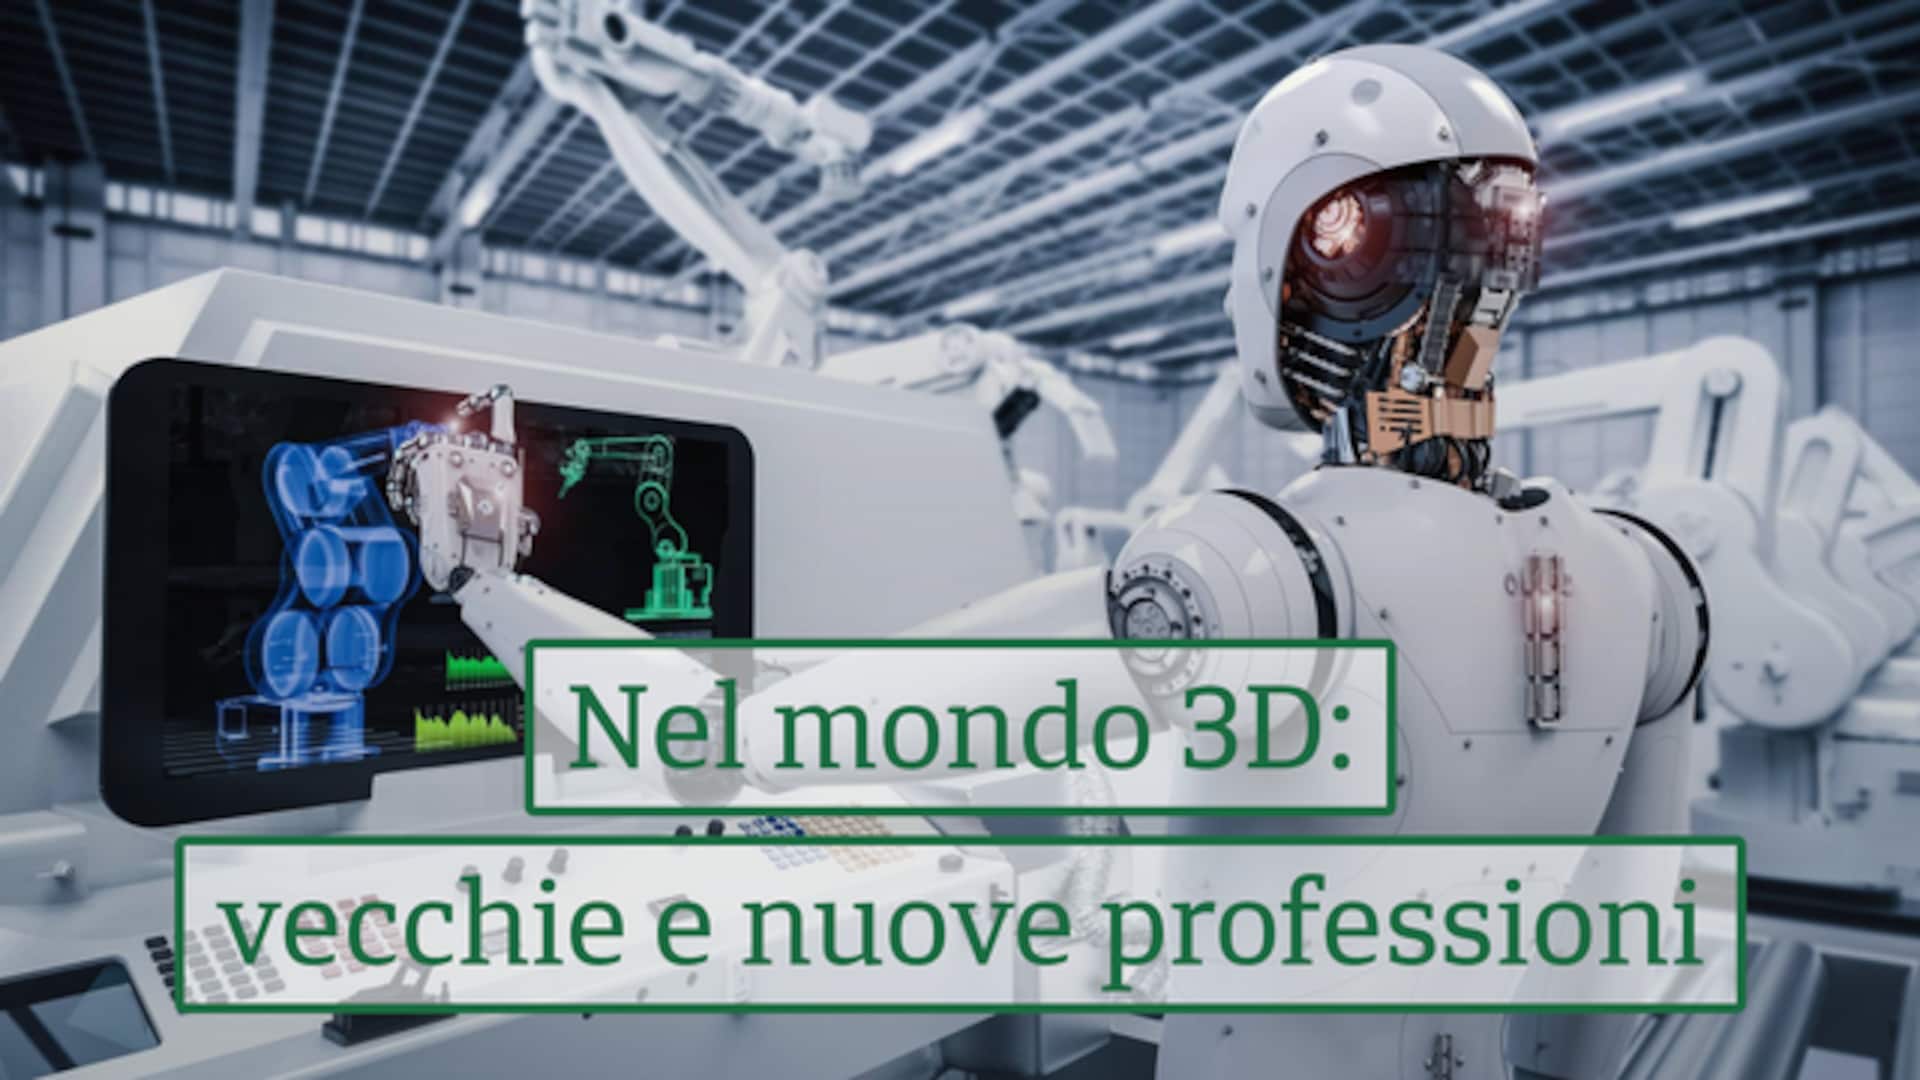 Nel mondo 3D: vecchie e nuove professioni